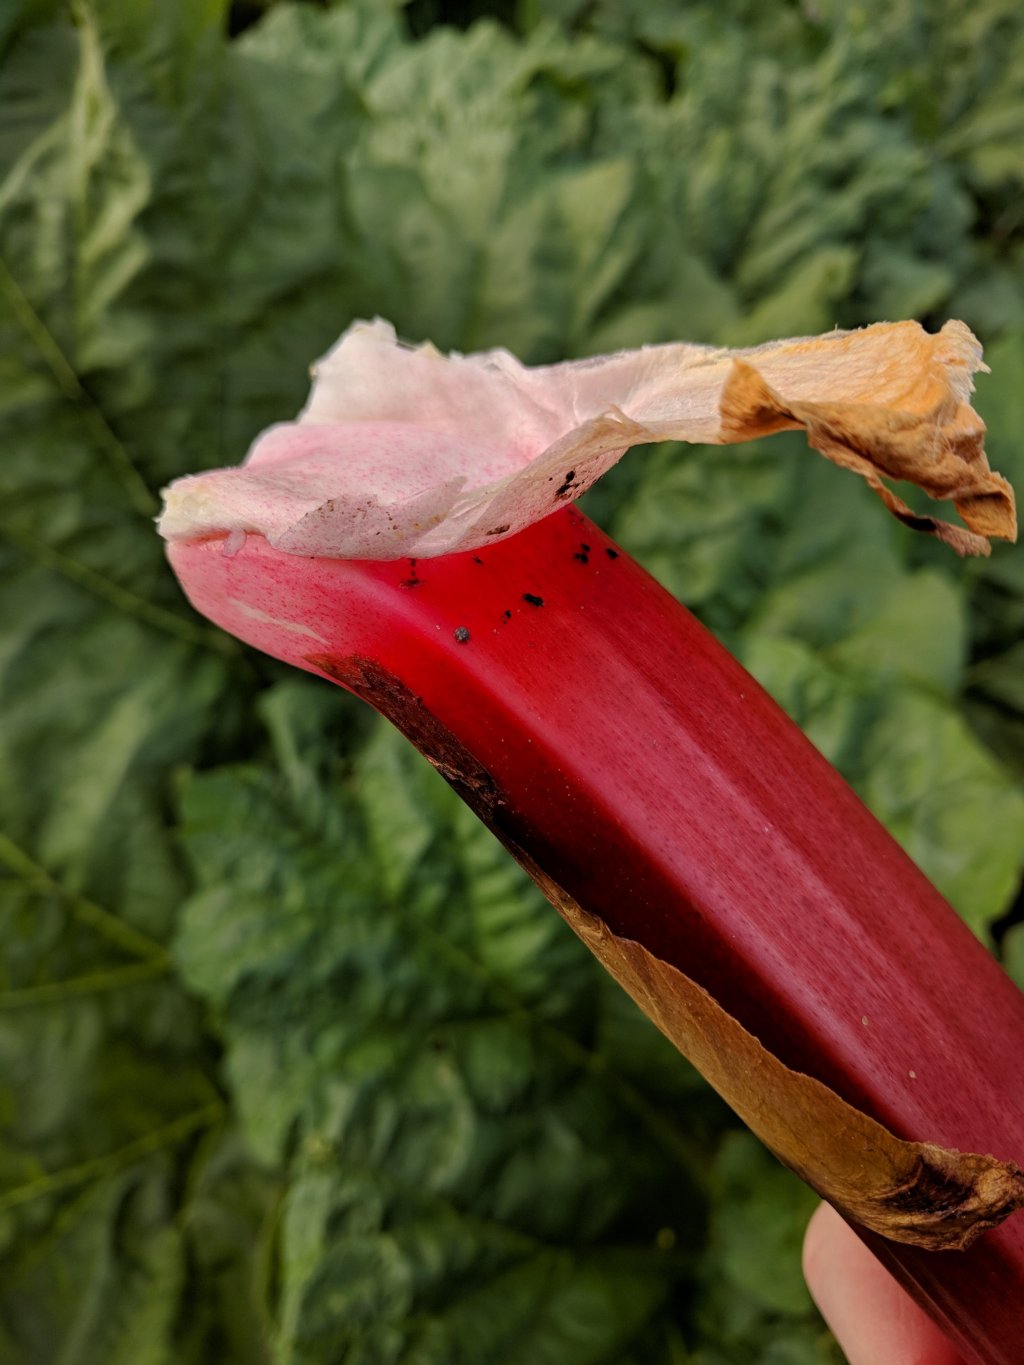 Picking Rhubarb